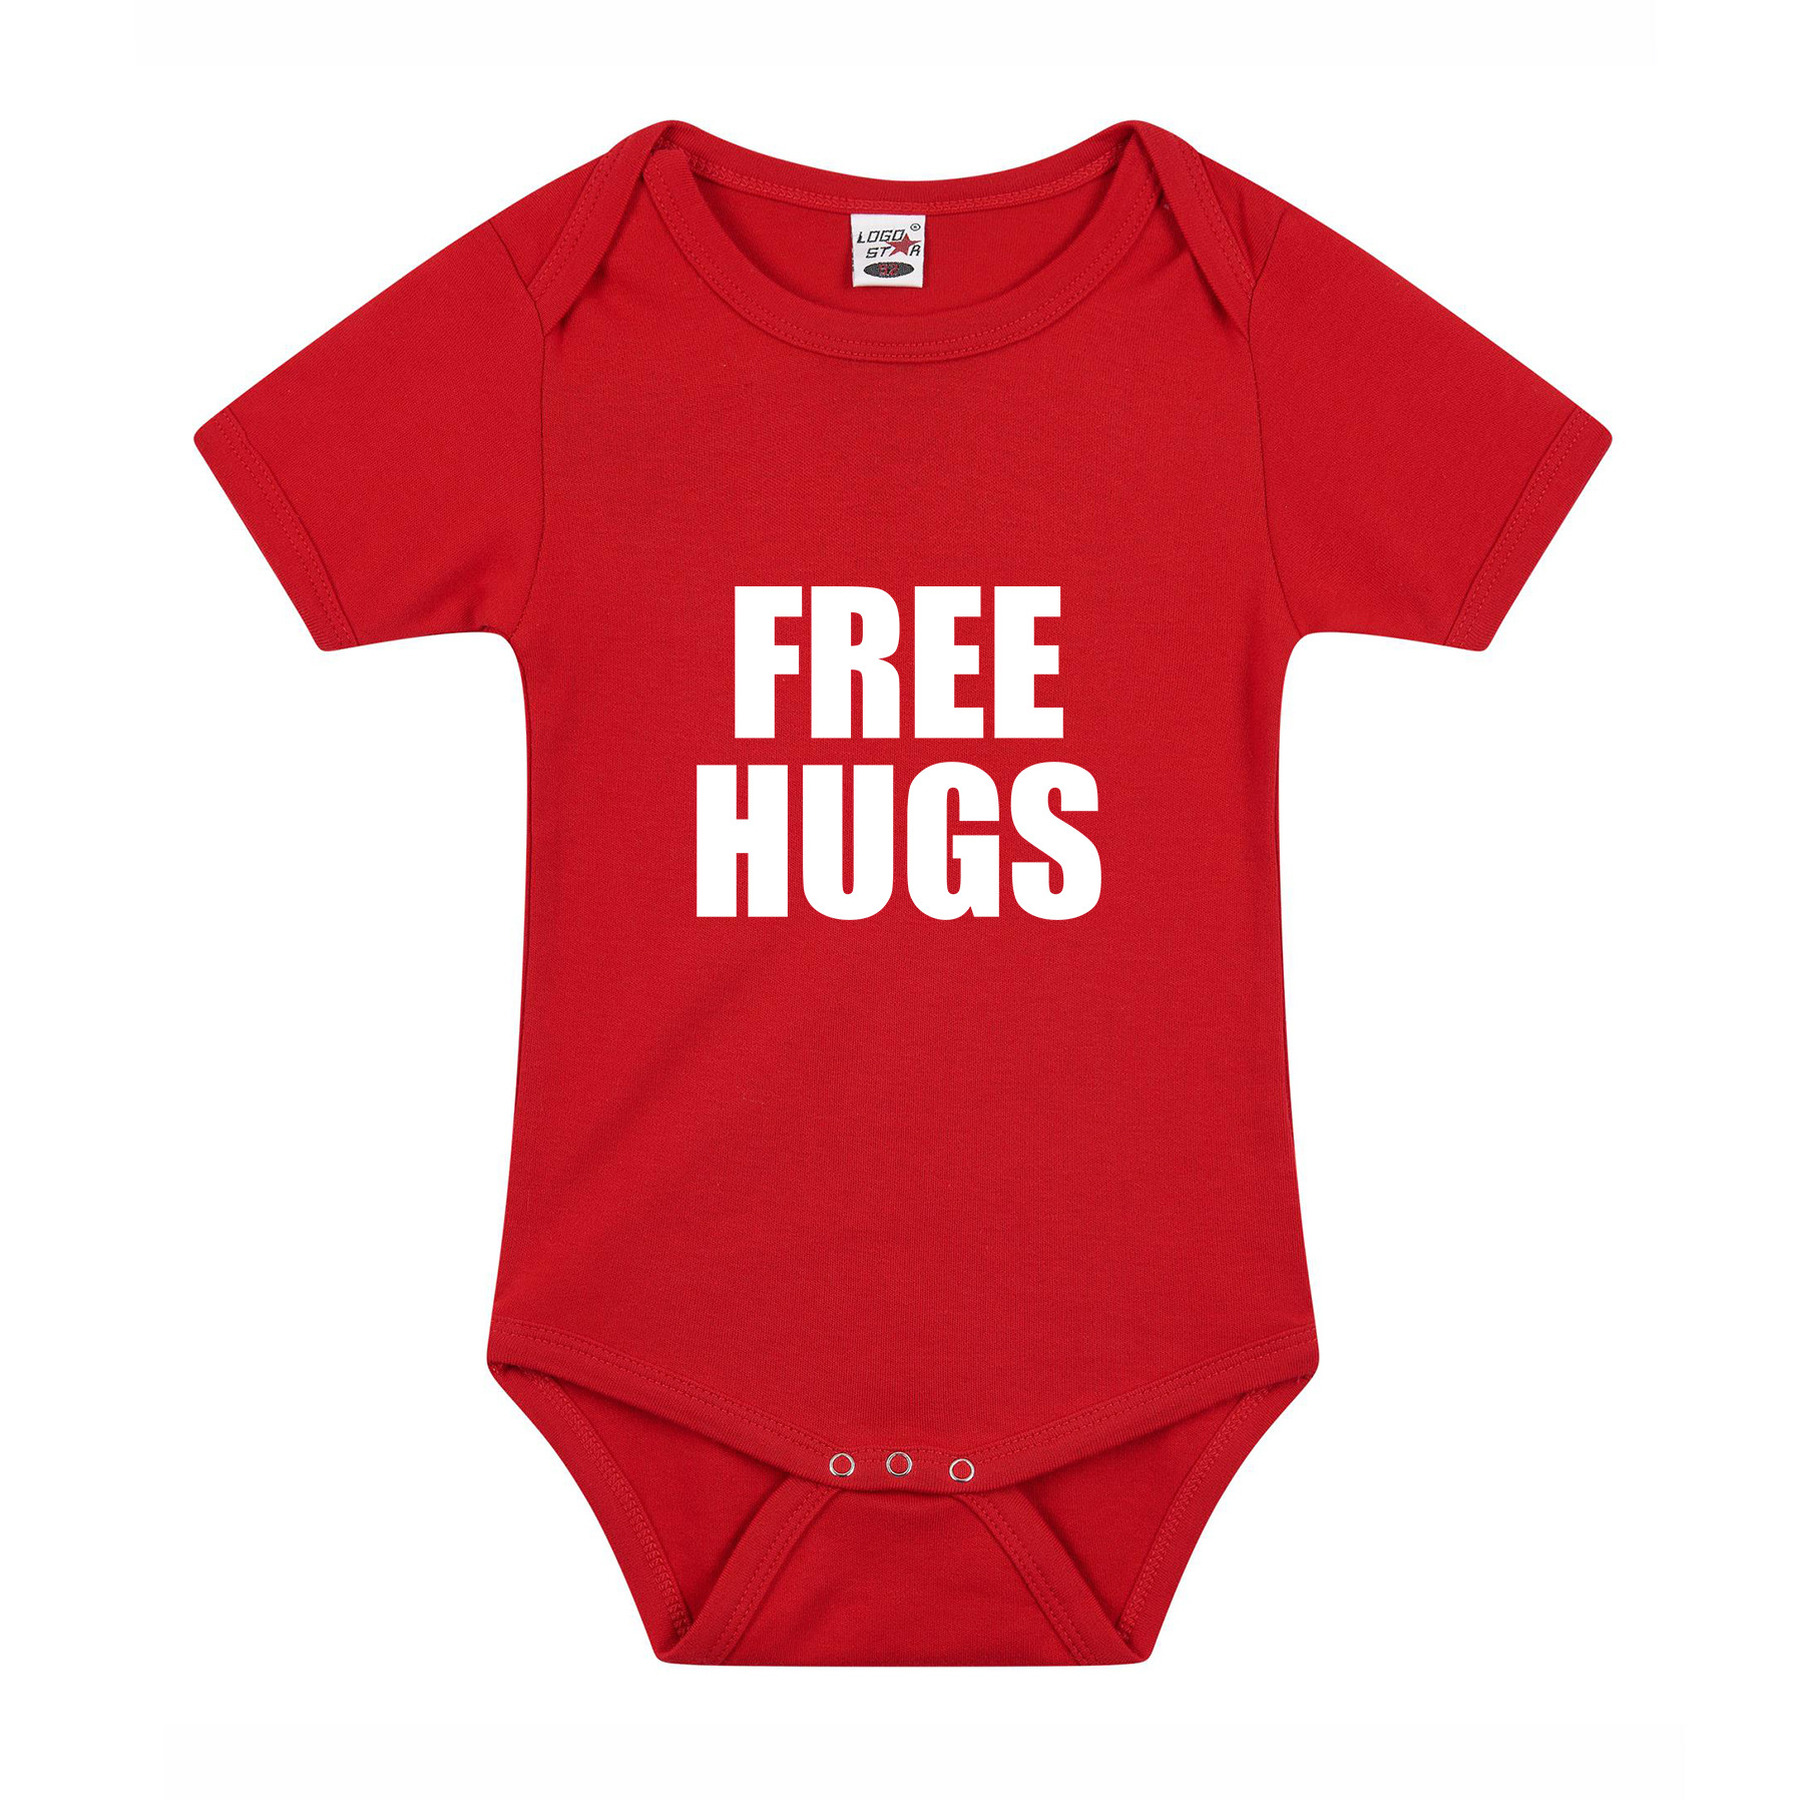 Free hugs cadeau baby rompertje rood jongen-meisje